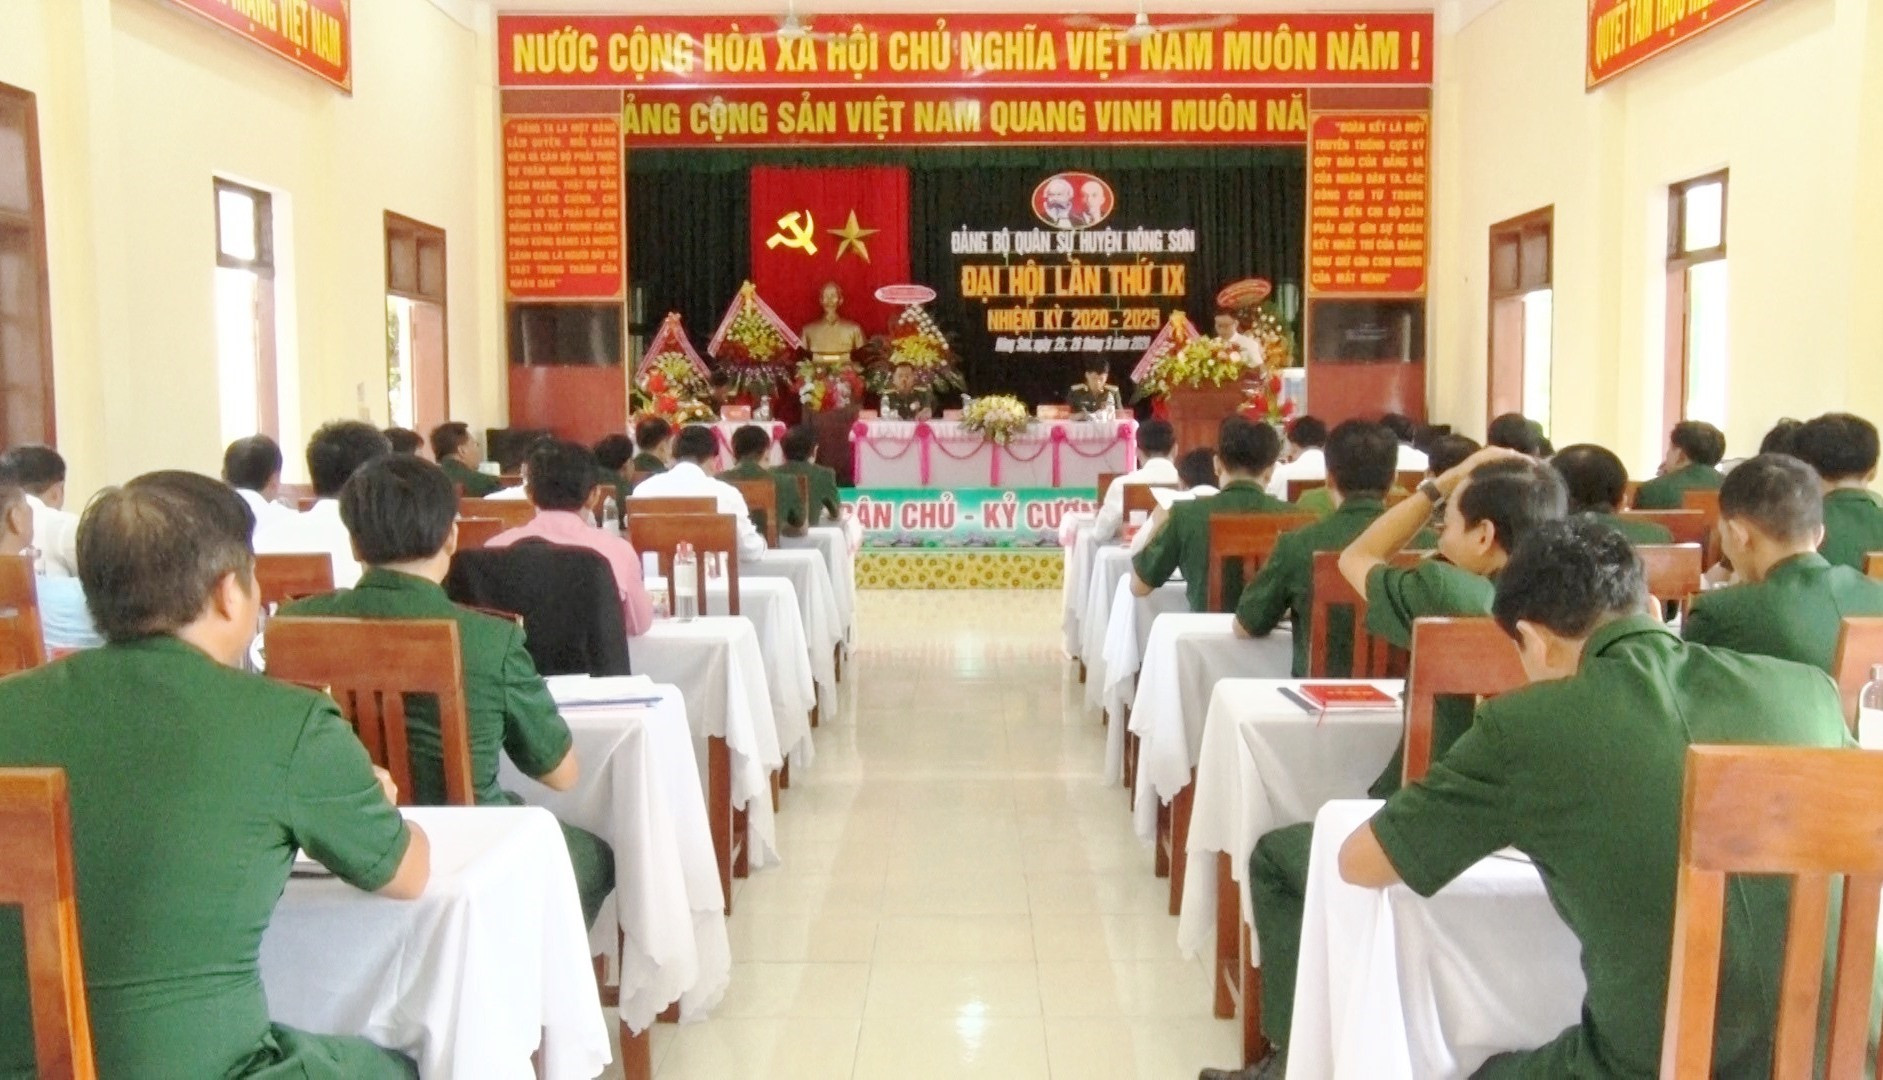 Đảng bộ Quân sự huyện Nông Sơn tổ chức đại hội lần thứ IX, nhiệm kỳ 2020 - 2025.